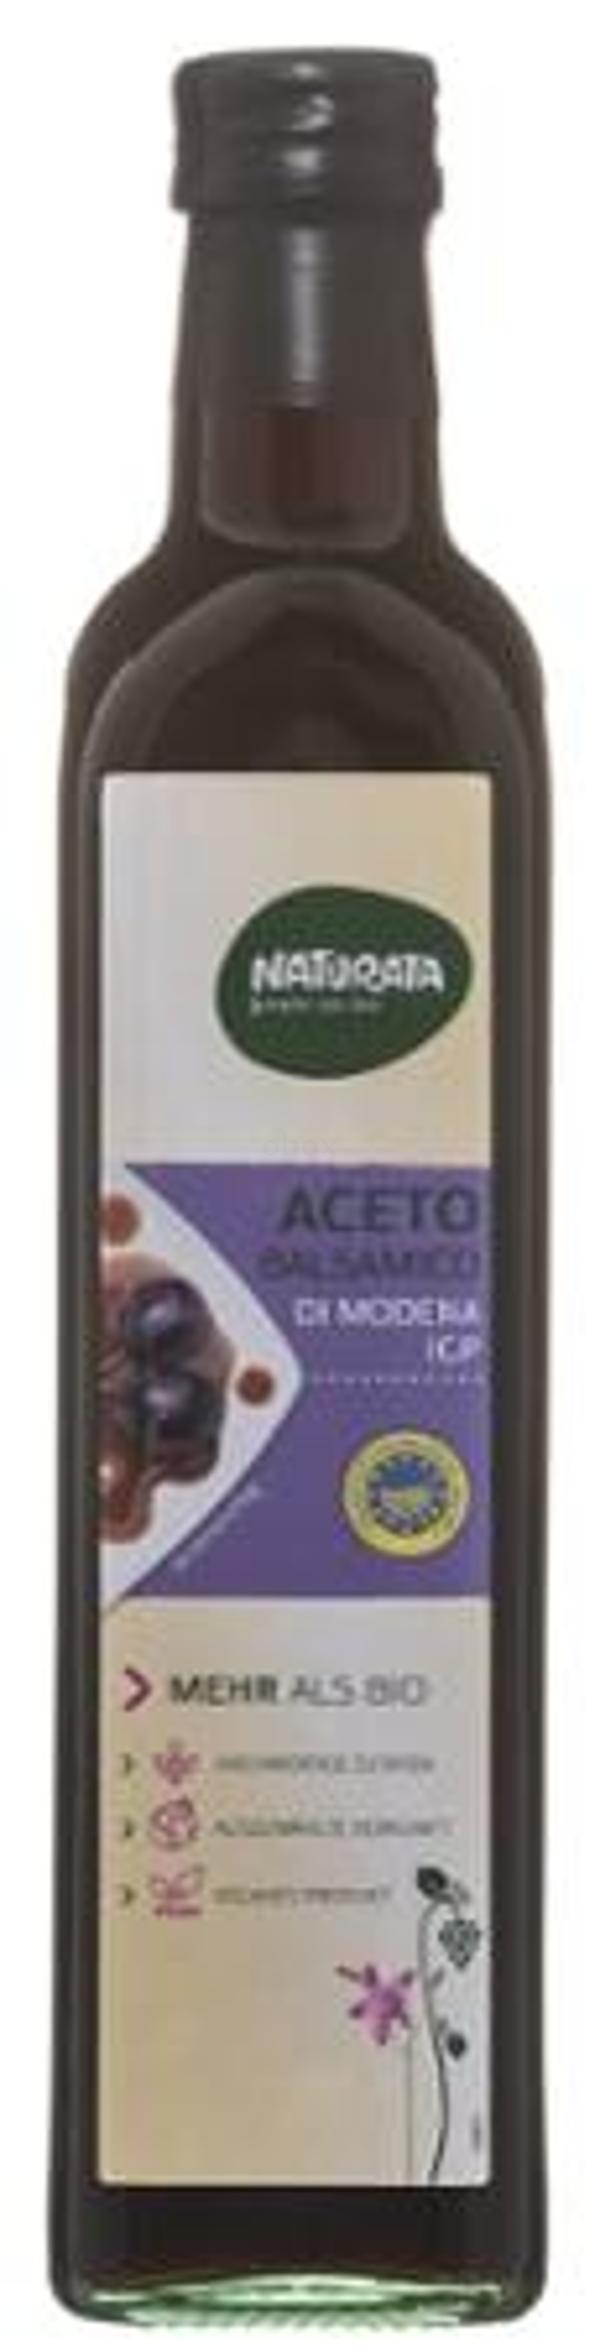 Produktfoto zu Aceto Balsamico Essig 0,5L